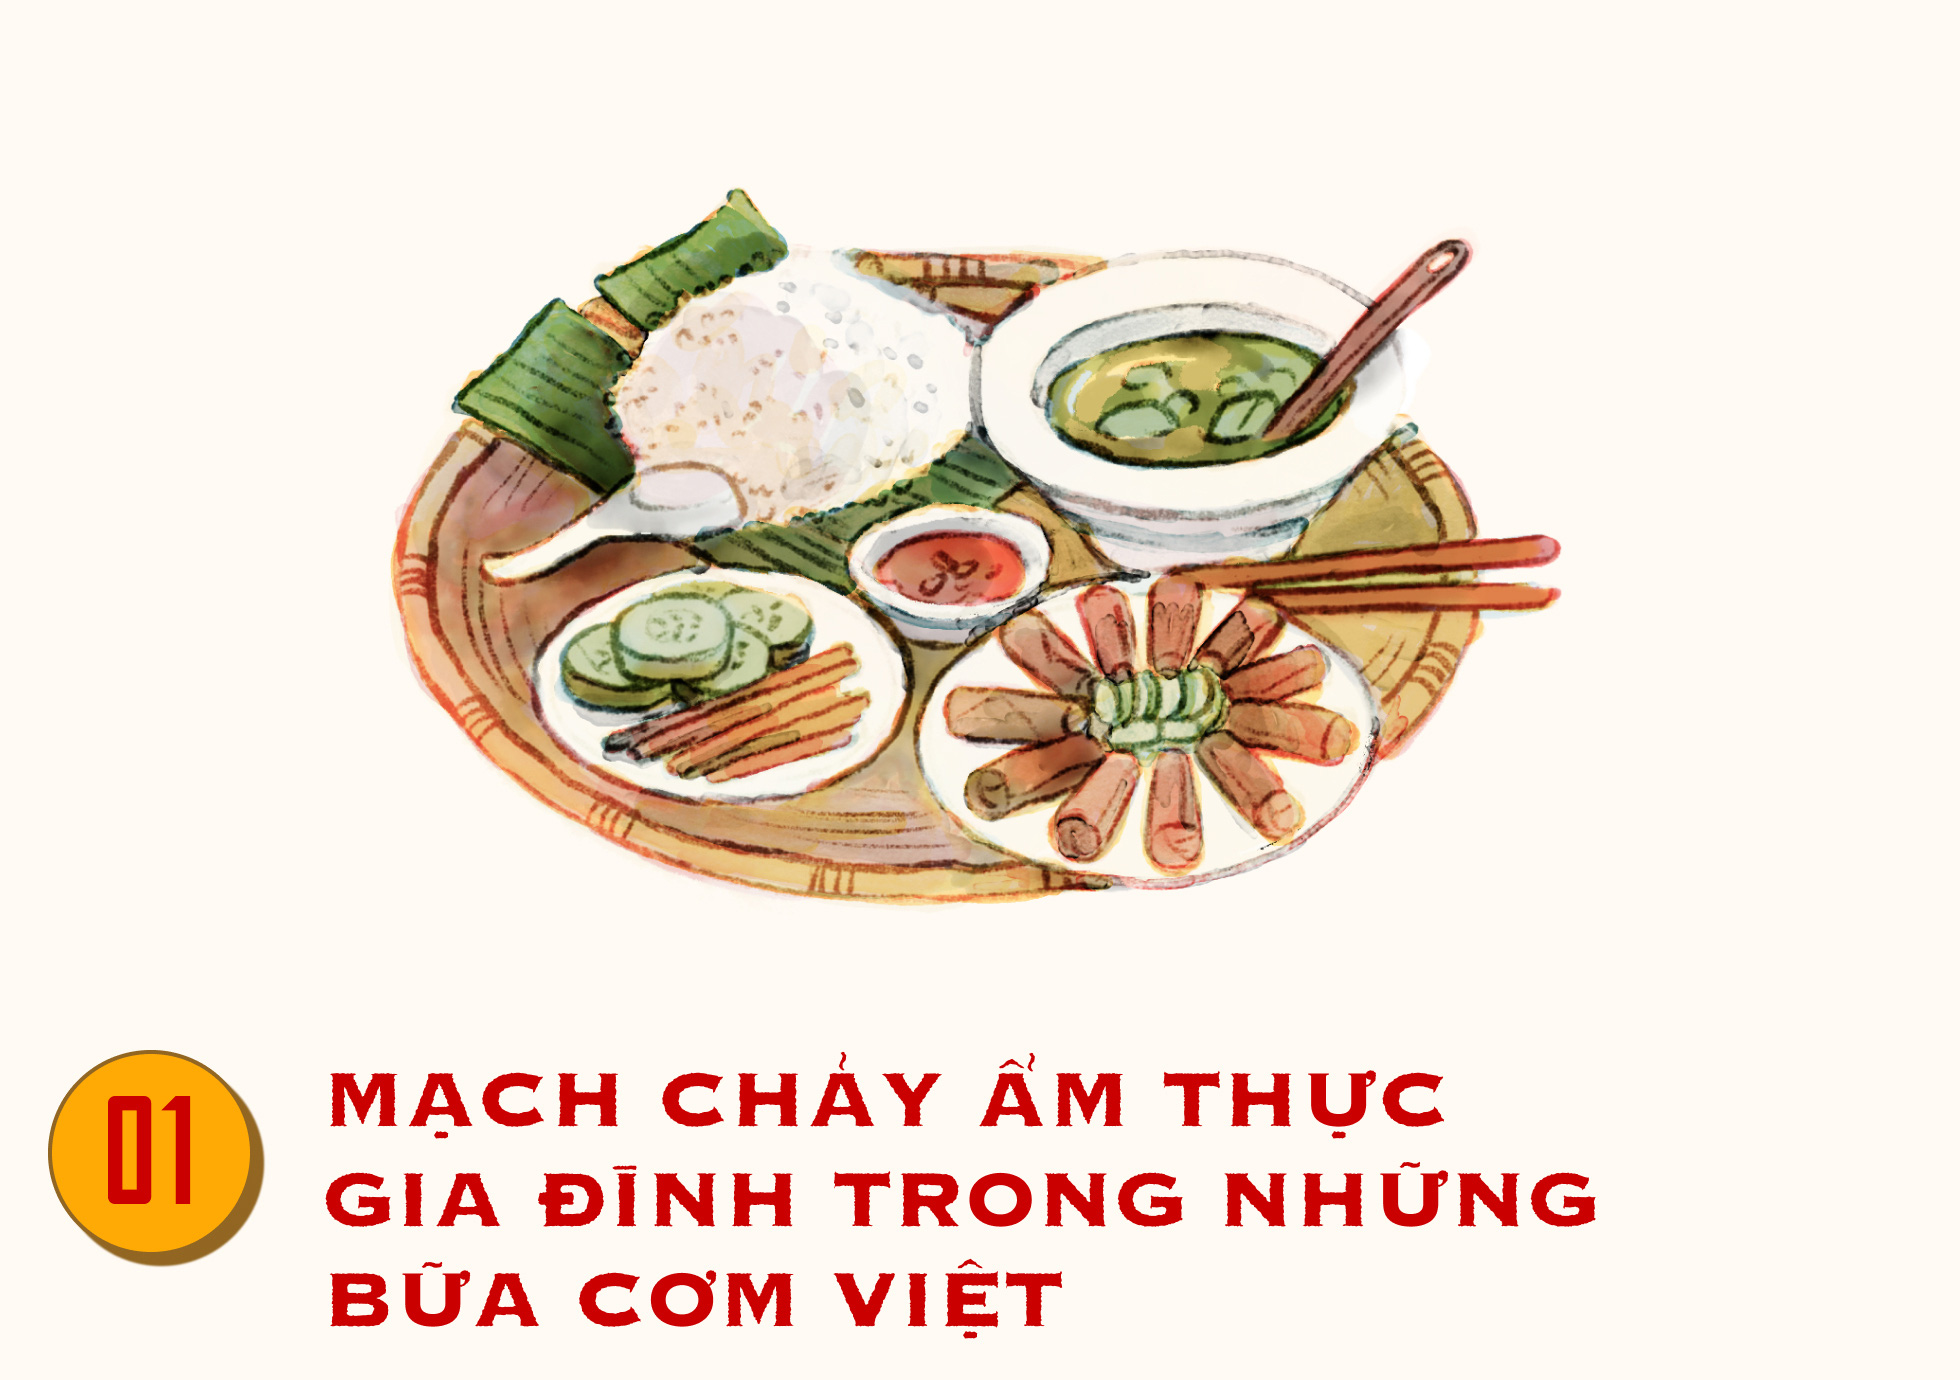 Những bữa cơm Việt truyền thống: Bữa cơm Việt truyền thống đầy màu sắc và hương vị sẽ đưa bạn trở về với quá khứ đầy nhớ nhung. Ngắm nhìn các món ăn Việt không chỉ khiến bạn thèm ăn mà còn truyền tải tinh thần ẩm thực đậm đà của Việt Nam.